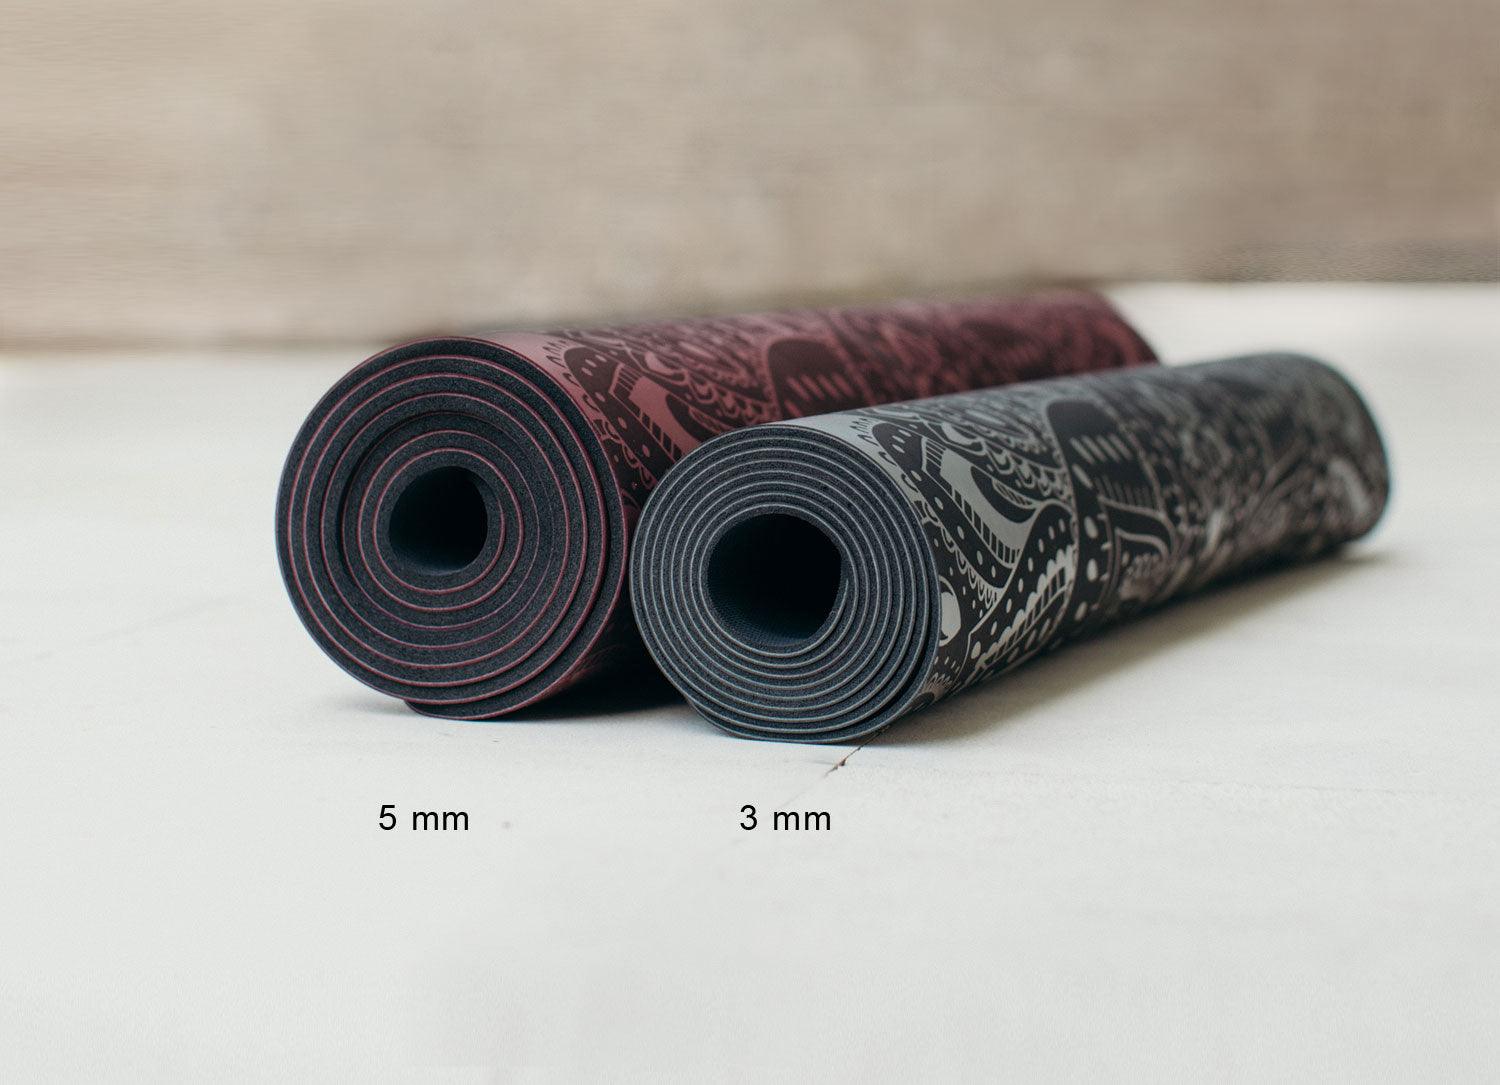 Infinity Yoga Mat - 5mm - Mandala Aqua - The Best Yoga Mat provides great support - Yoga Design Lab 